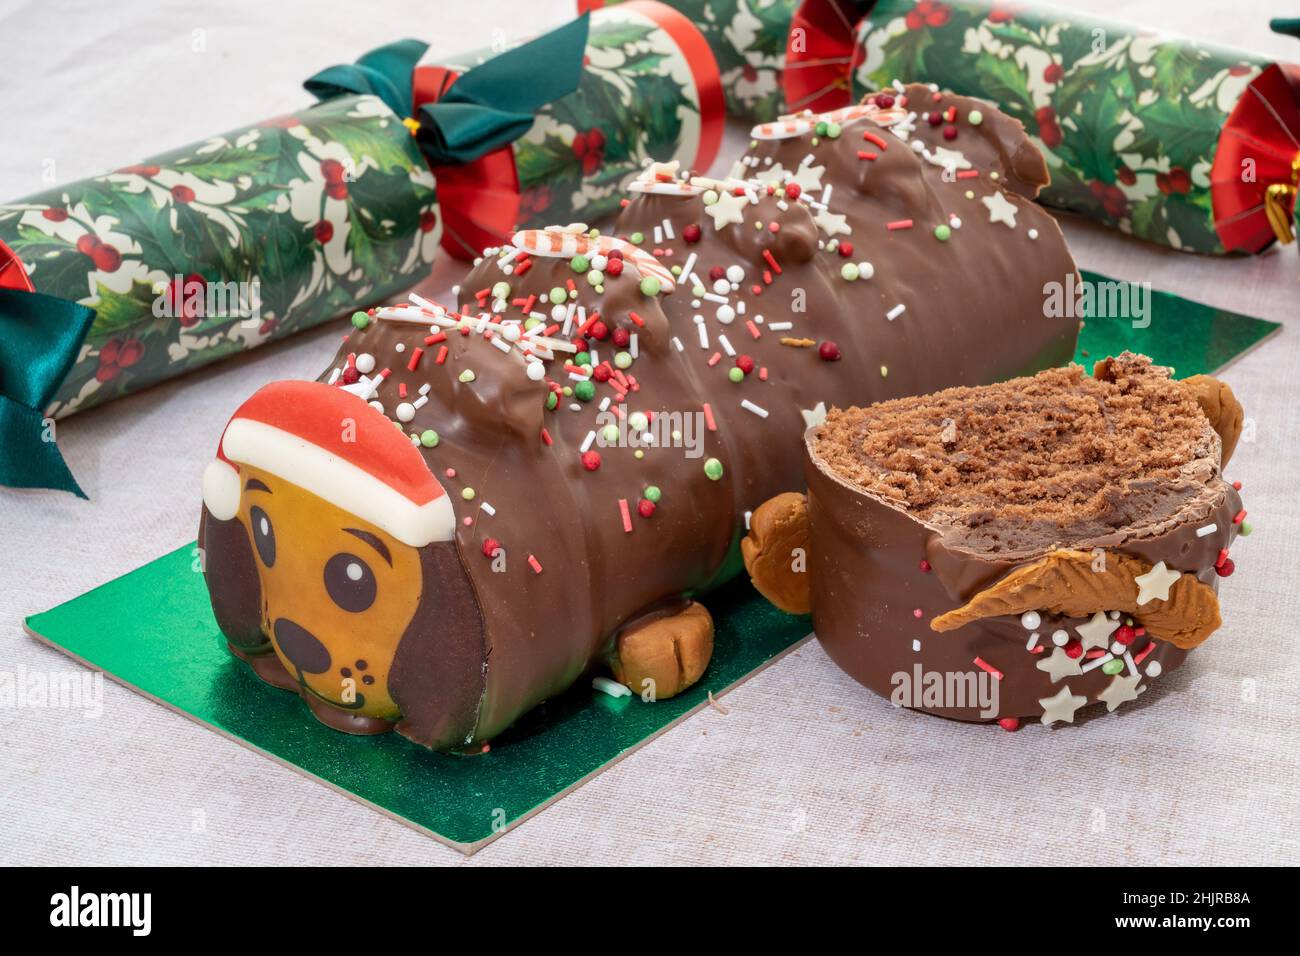 Un registro de yule de chocolate con forma de perro con temática navideña con galletas saladas Foto de stock